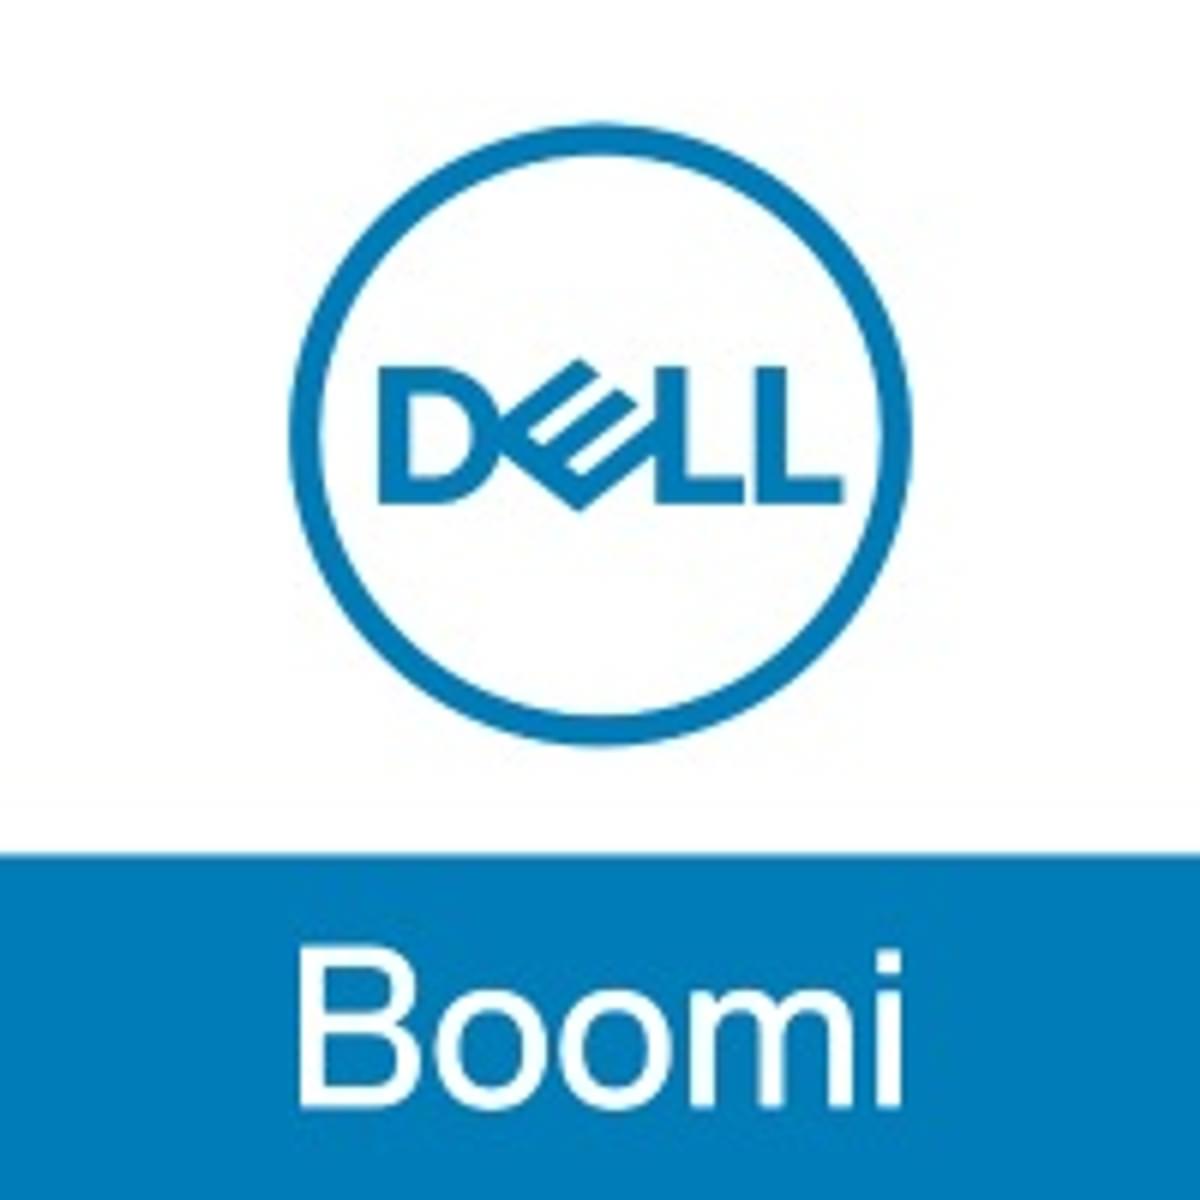 Dell Boomi versnelt digitale transformatie met verbeterde ondersteuning van IoT-oplossingen image